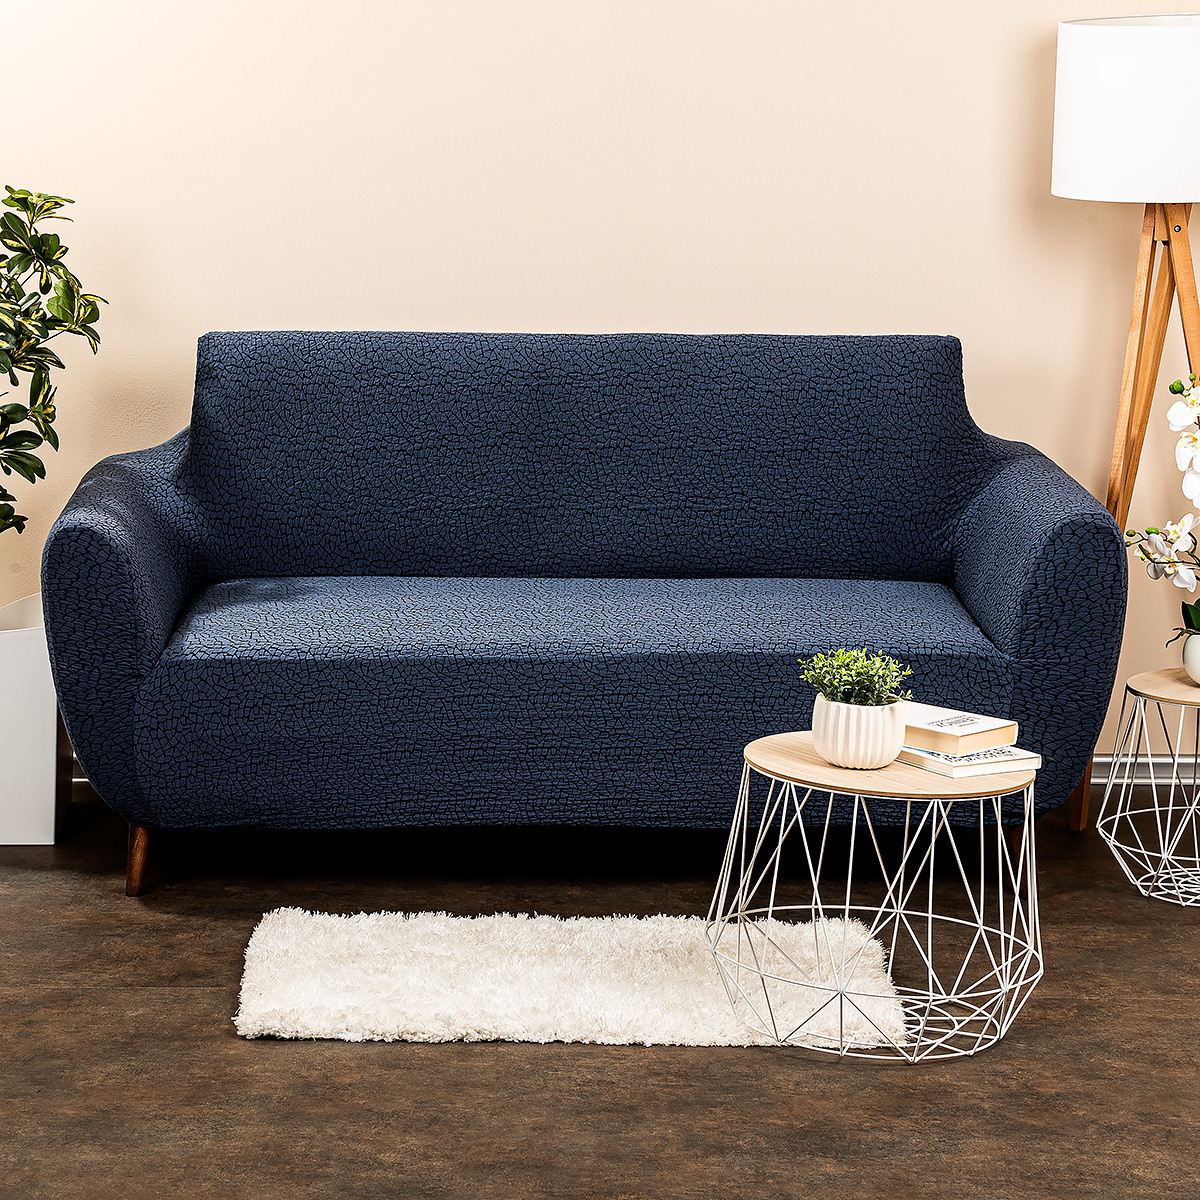 Husa multielastica 4Home Comfort Plus pentru canapea, albastra, 140 - 180 cm